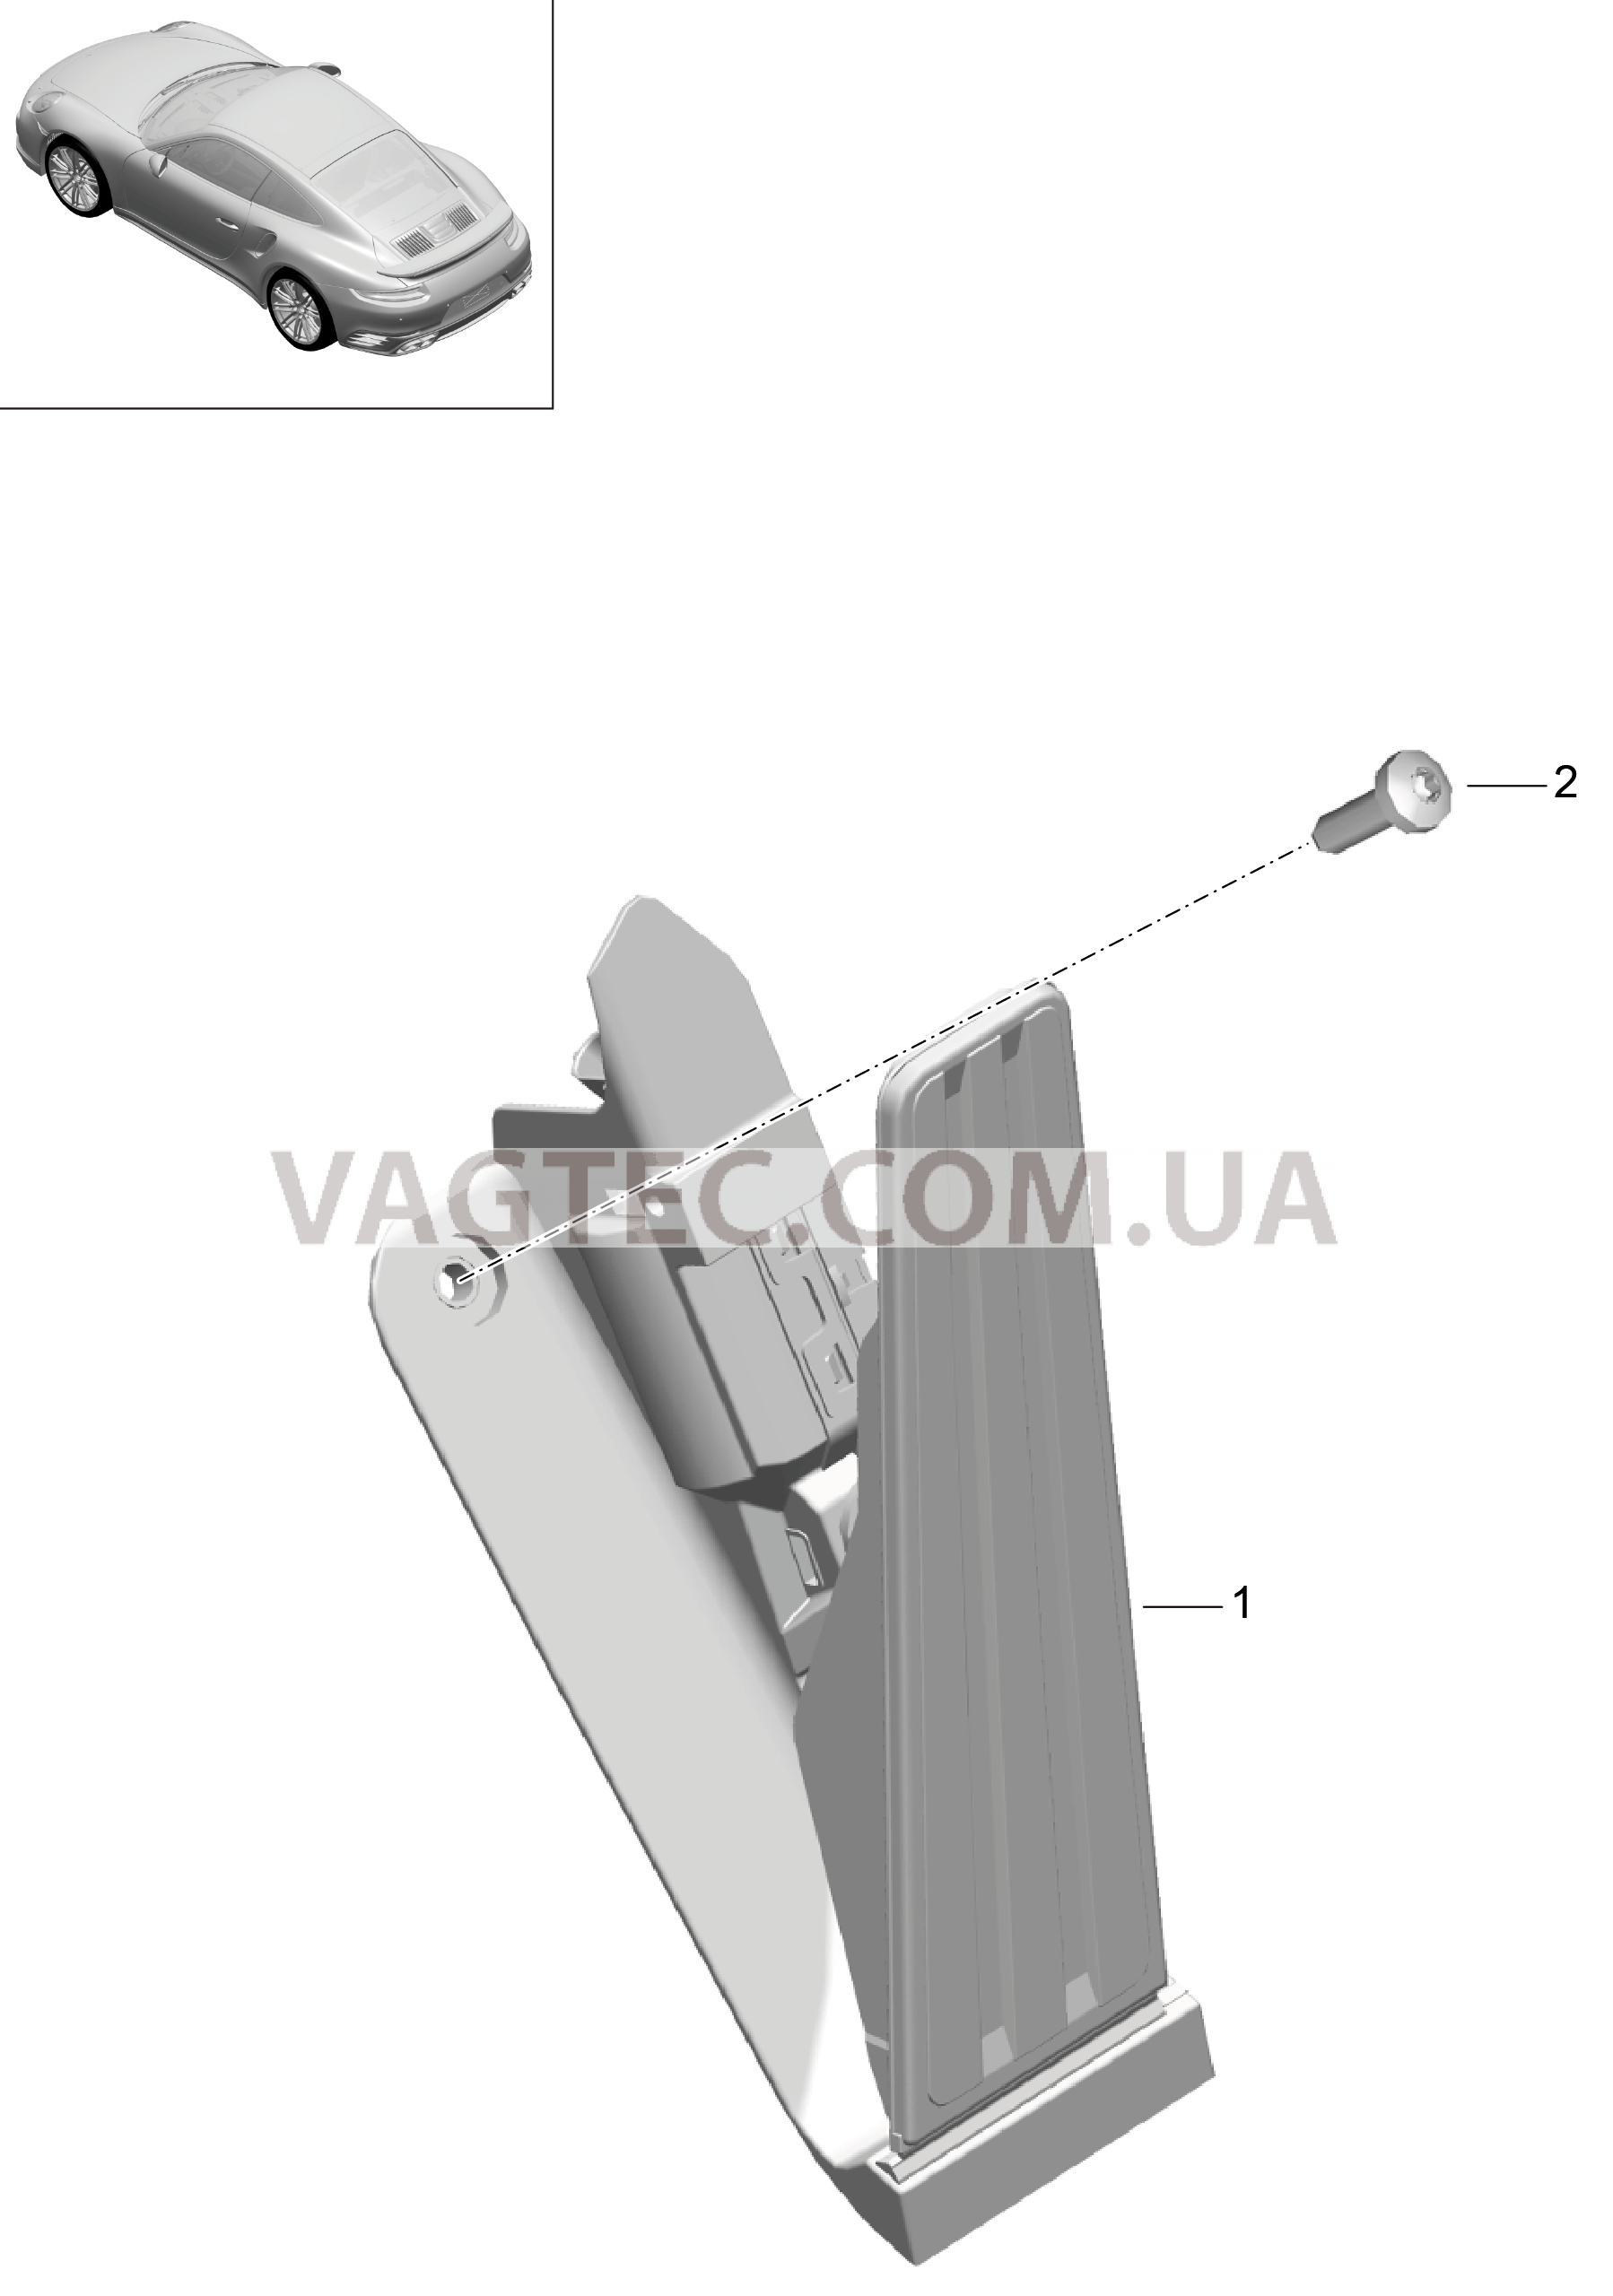 702-012 Педальный механизм, Привод акселератора для PORSCHE Porsche991Turbo 2014-2017USA